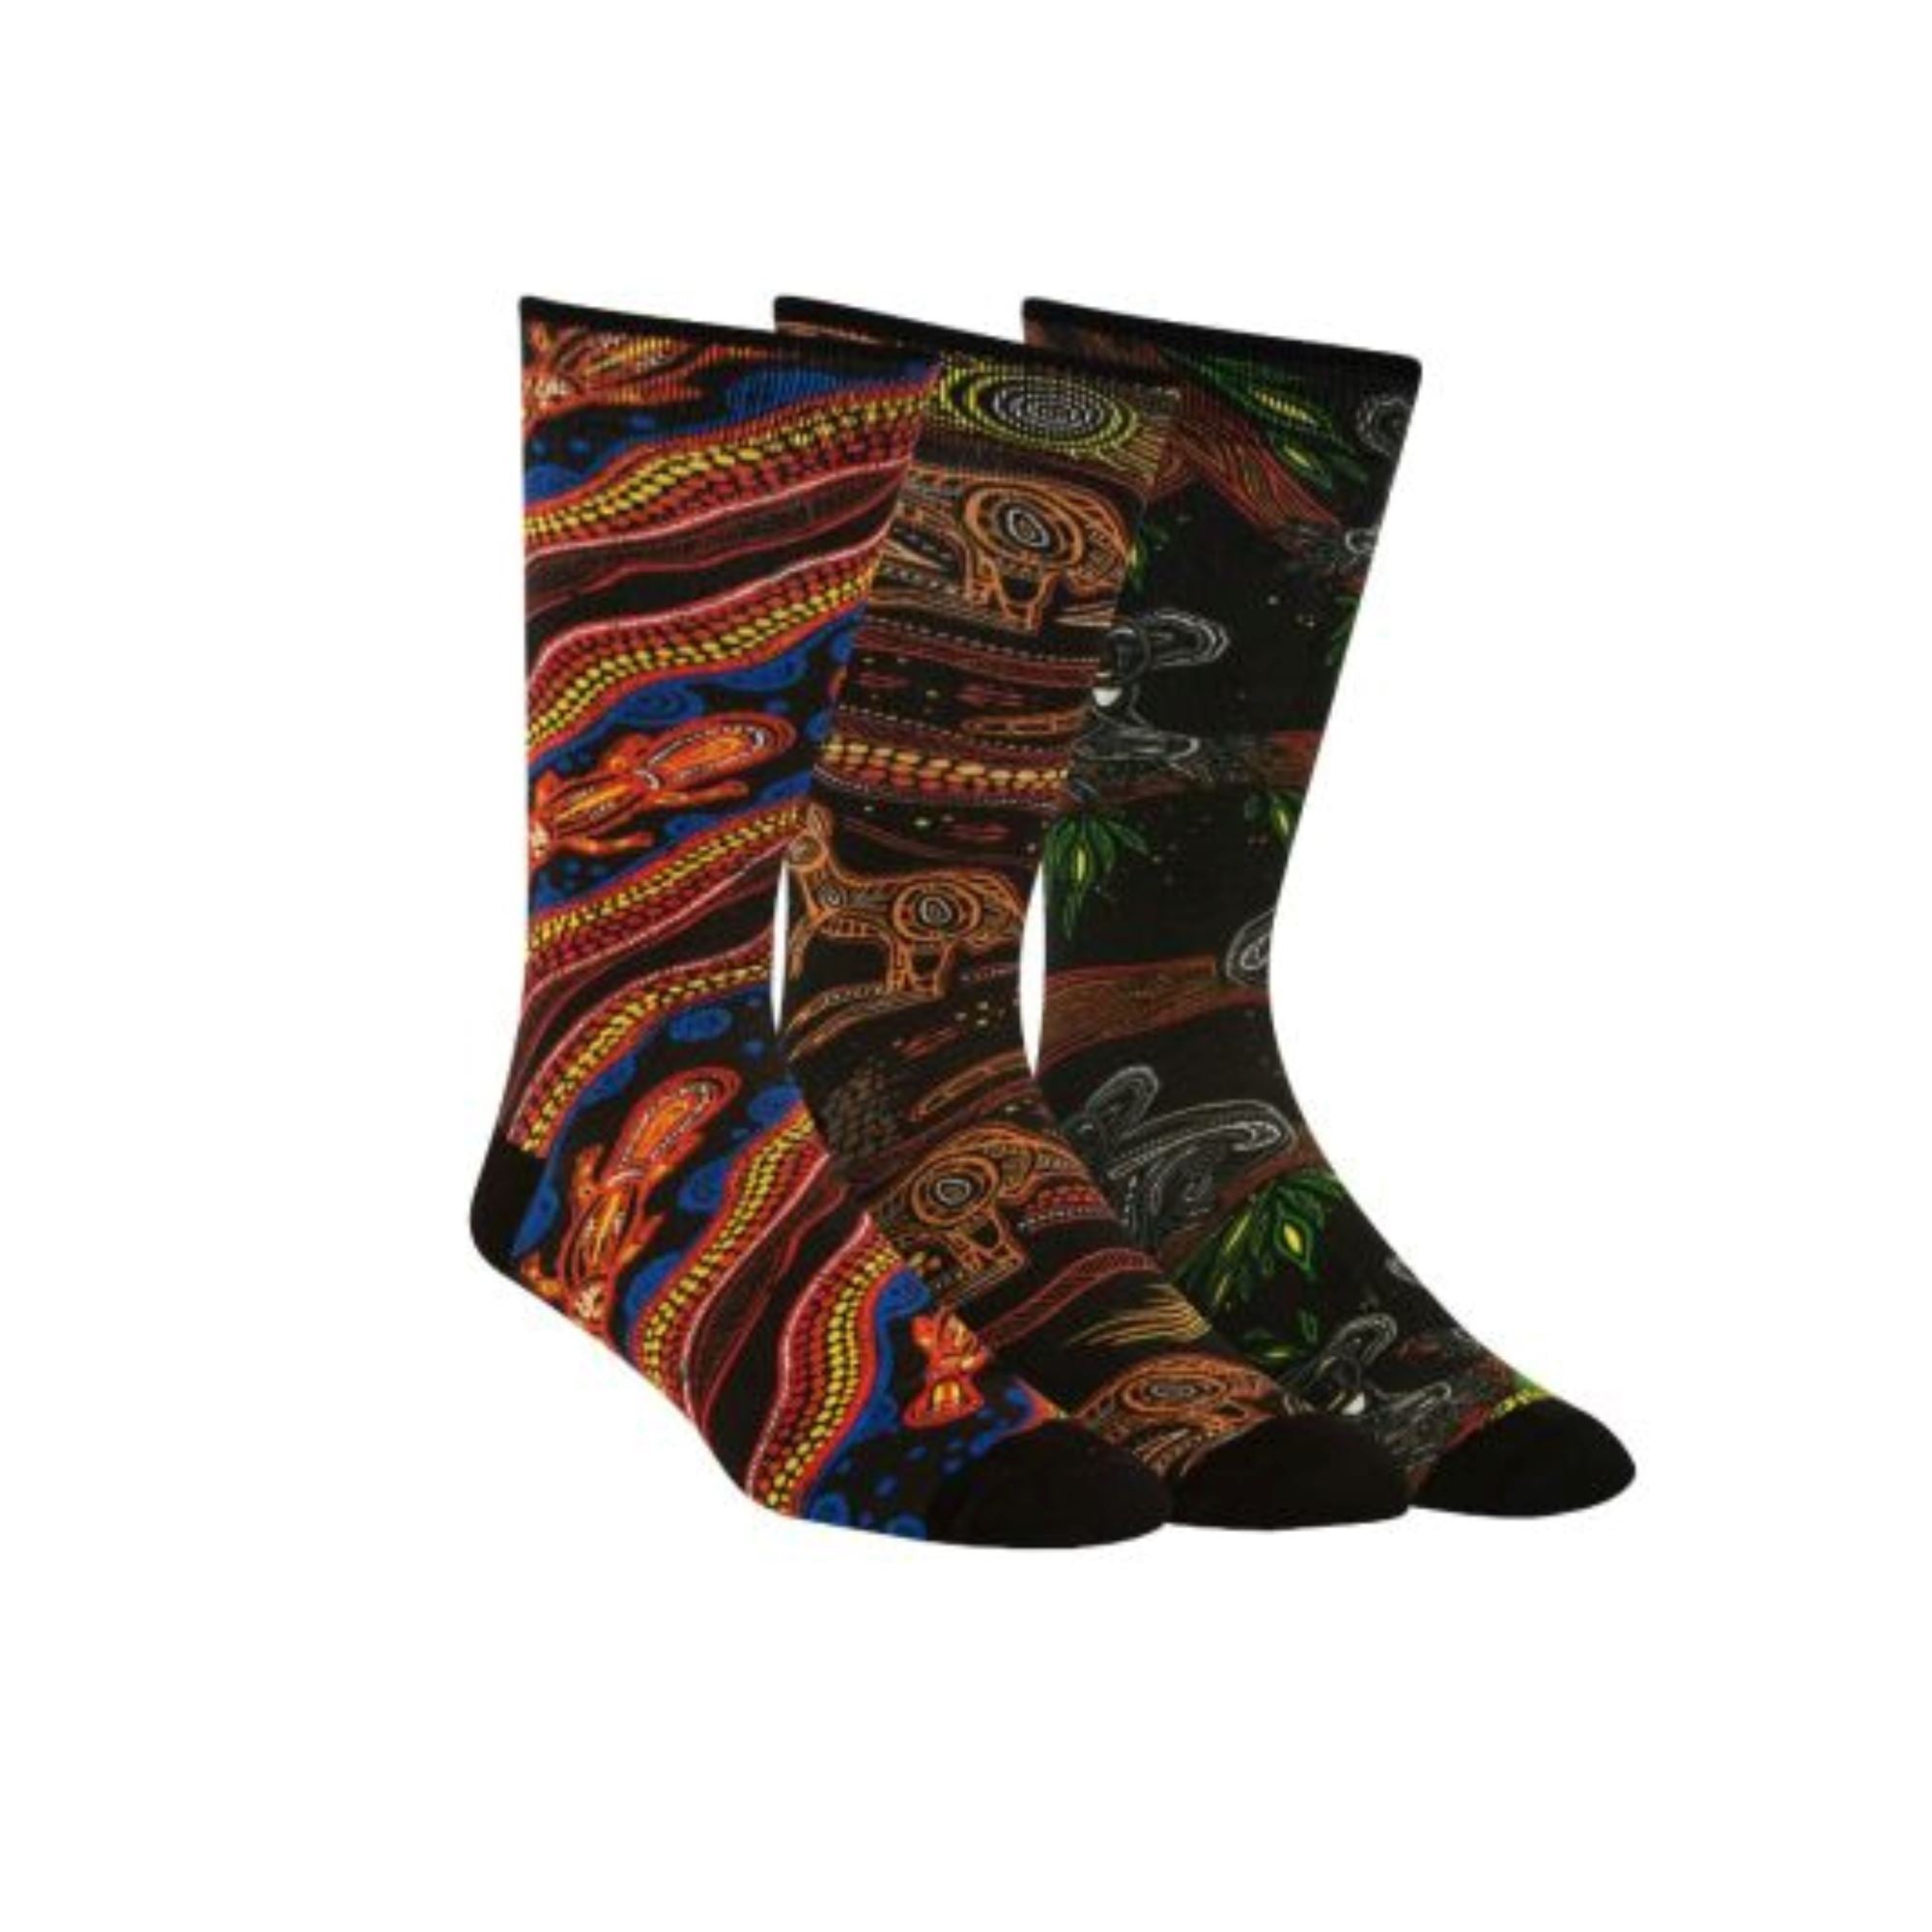 Indigenous Australian 3 pair Socks Gift Box Socks Clinks 